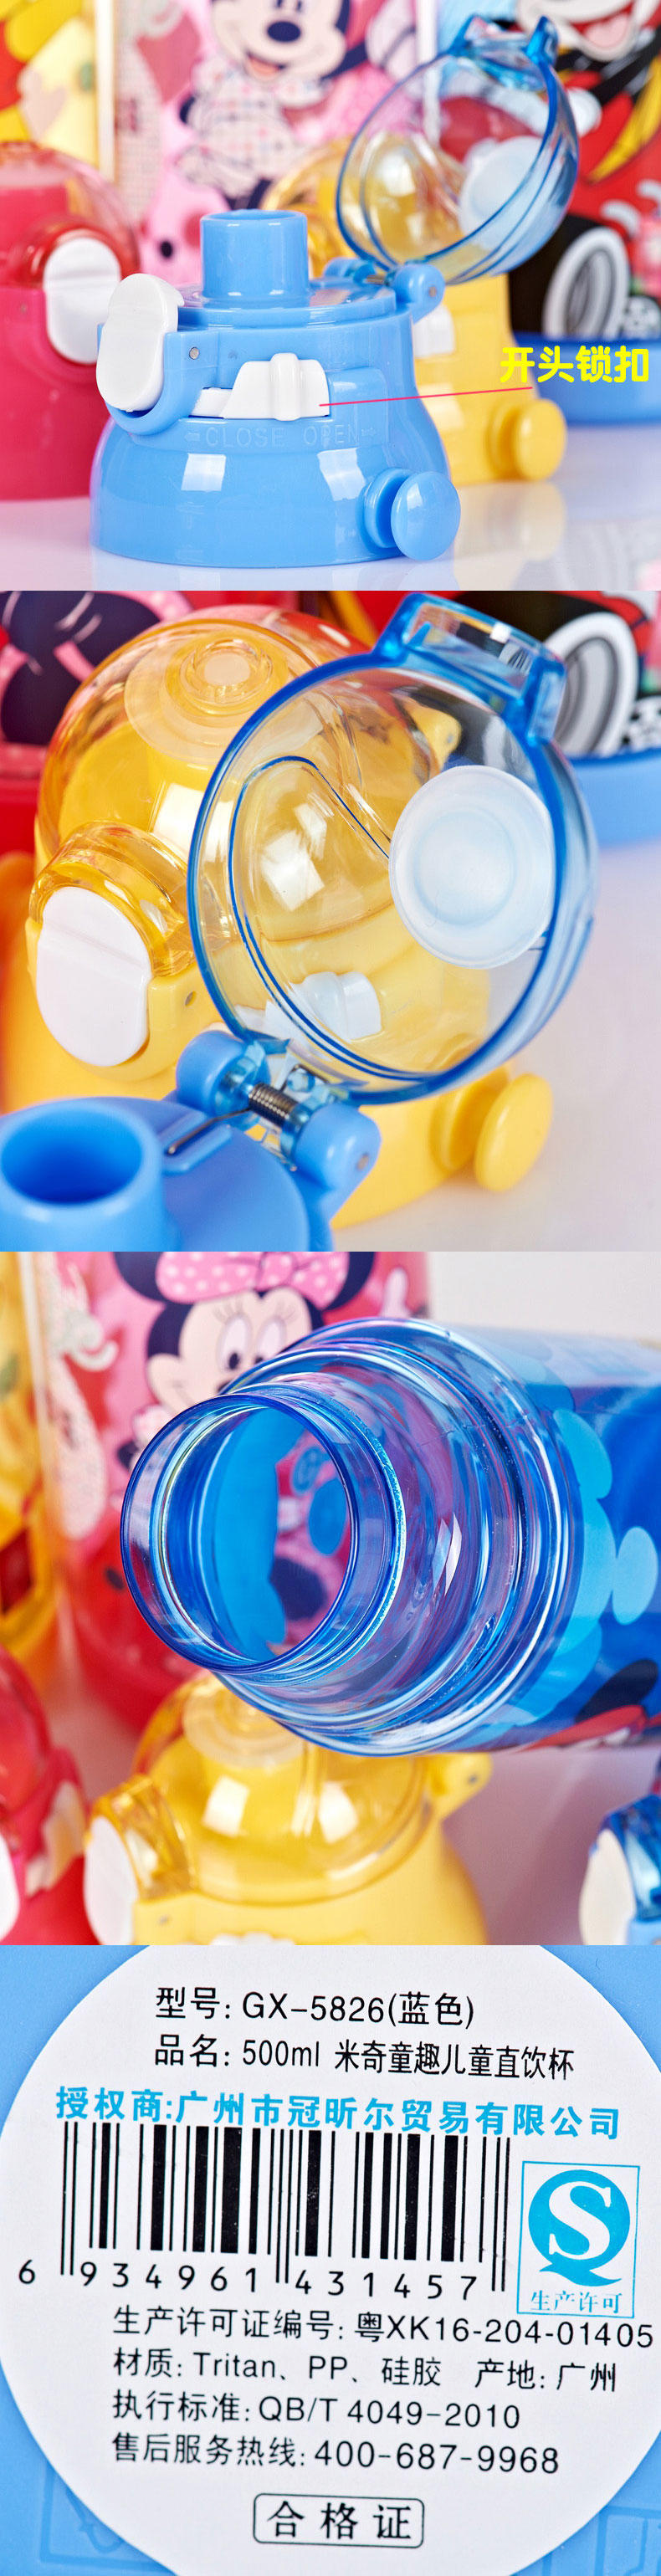 迪士尼米奇公主儿童小学生卡通直饮杯水杯塑料水杯